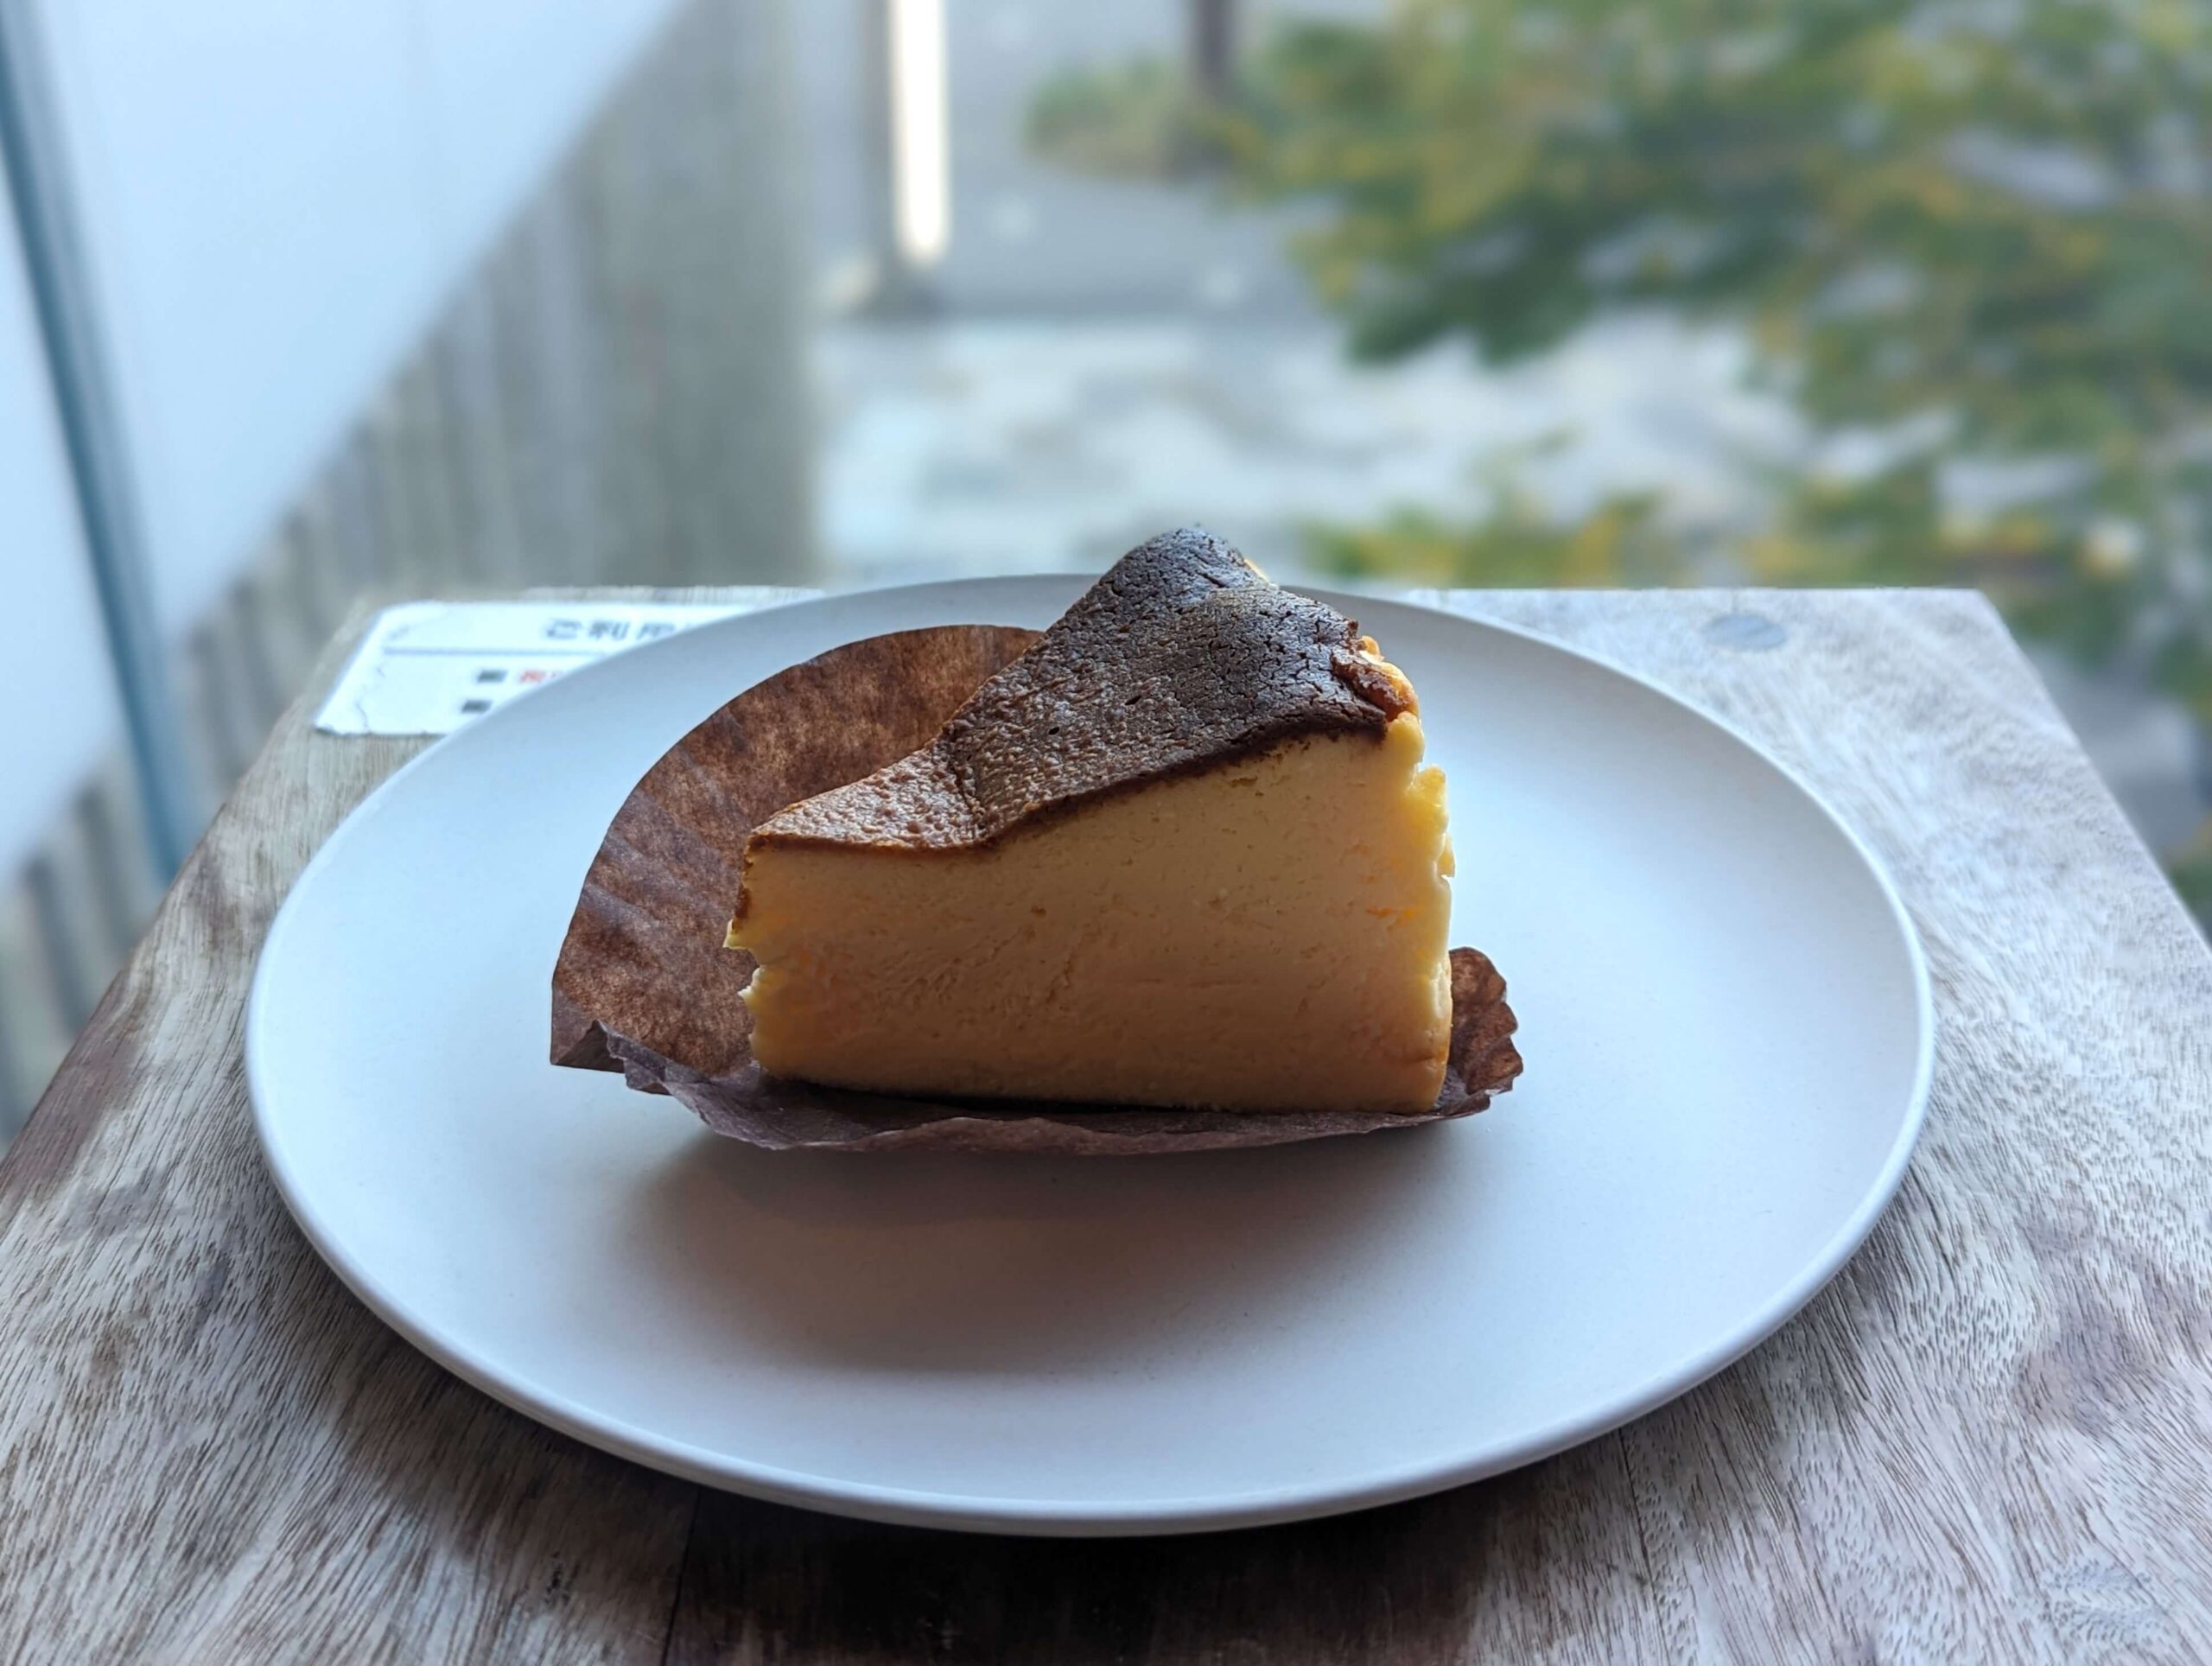 中野「ソワメーム」のバスクチーズケーキの断面の写真